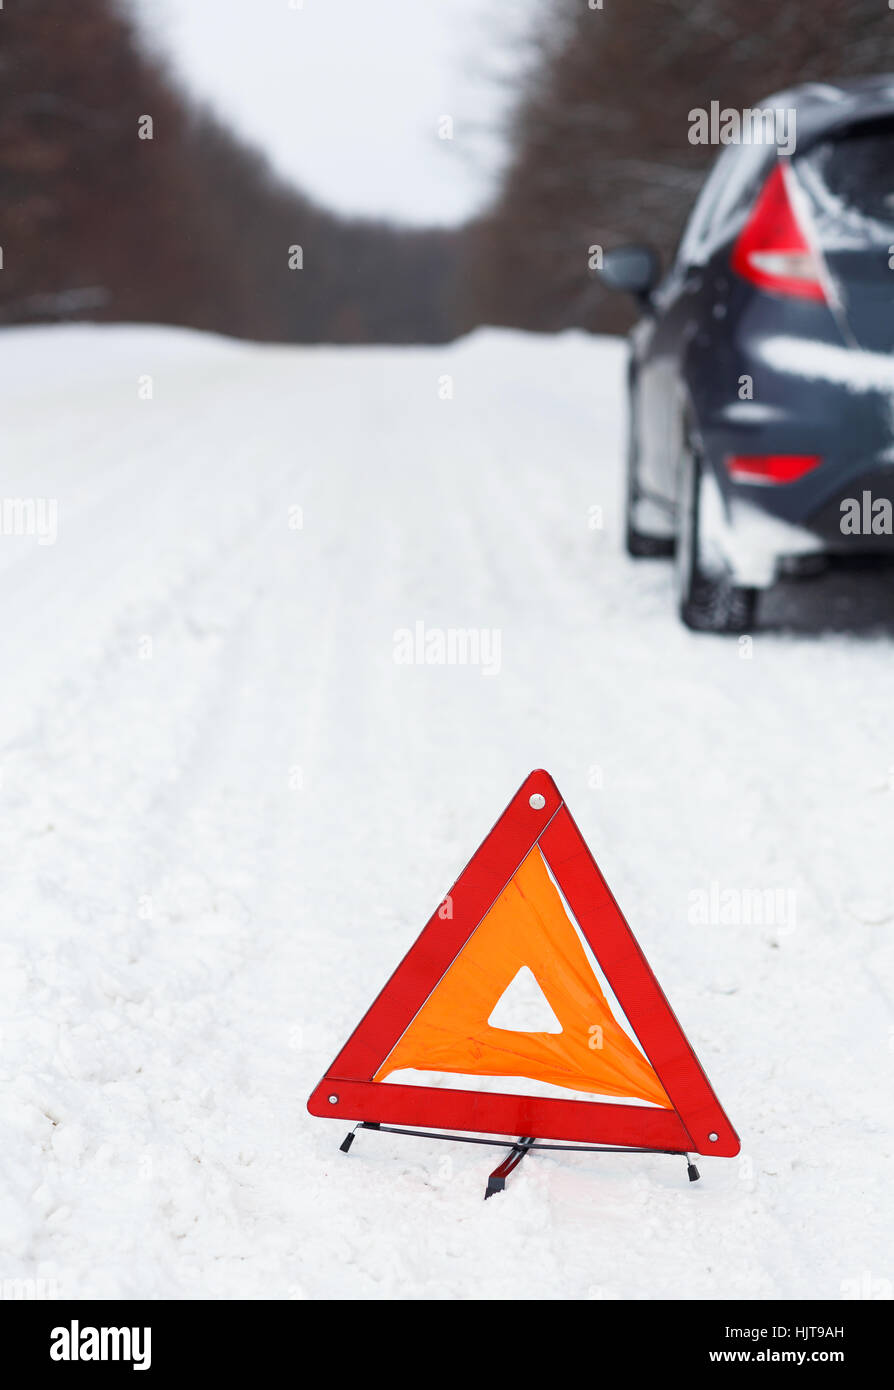 Le transport, l'hiver et véhicule concept - gros plan du triangle d'avertissement rouge avec une voiture en panne Banque D'Images